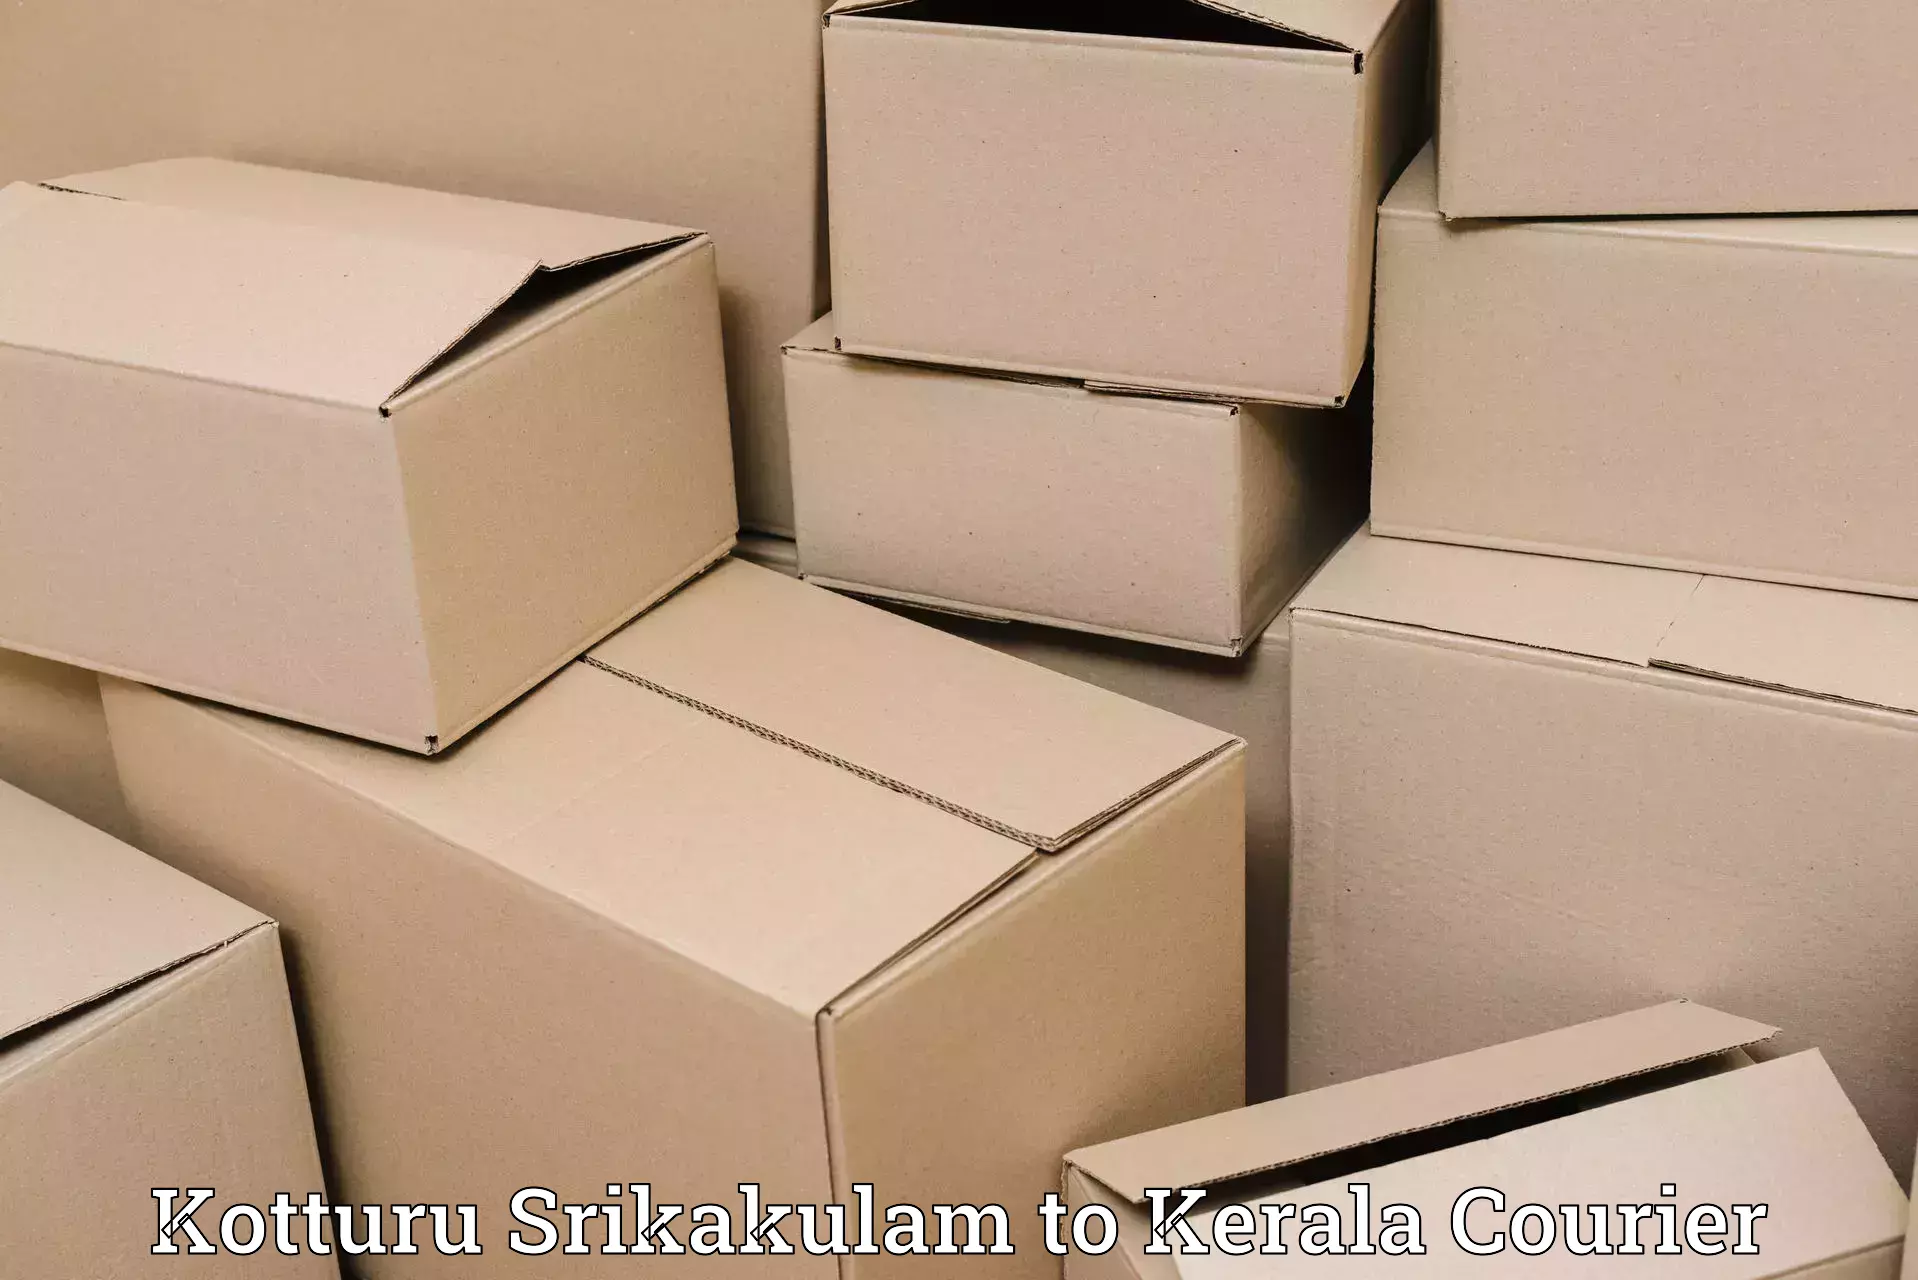 Door-to-door freight service Kotturu Srikakulam to North Paravur